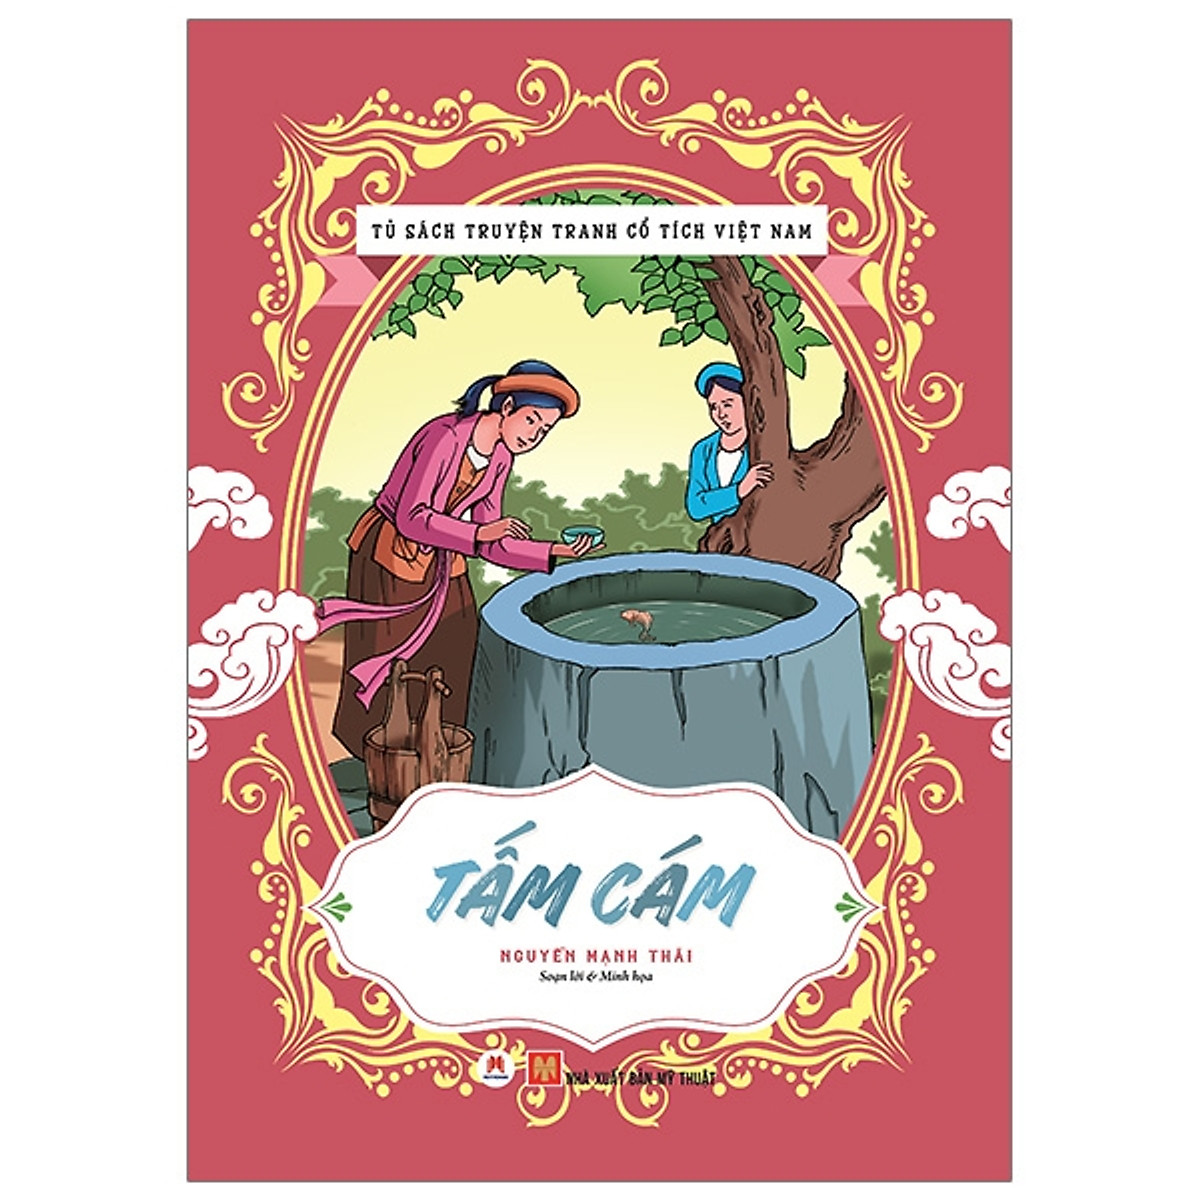 Mua Tủ Sách Truyện Tranh Cổ Tích Việt Nam: Tấm Cám (Tái Bản 2020) tại Nhà  sách Fahasa